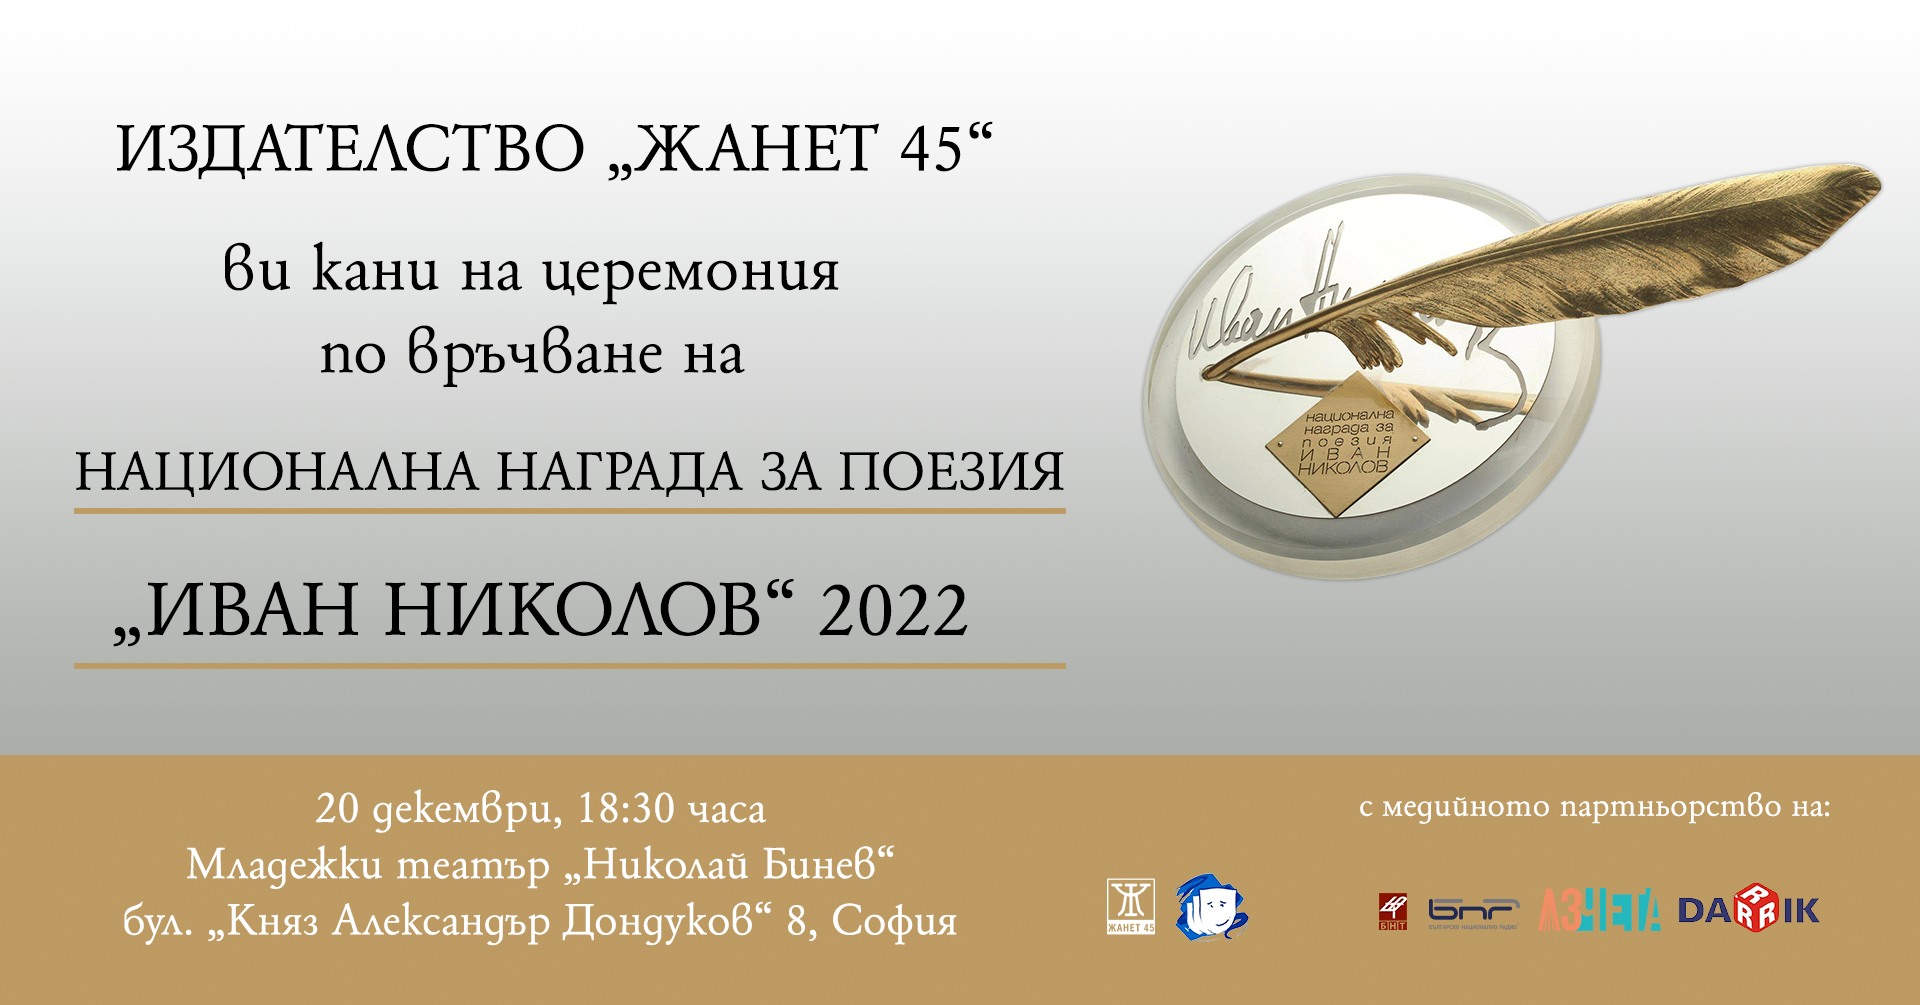 Връчване на наградата "Иван Николов" за 2022